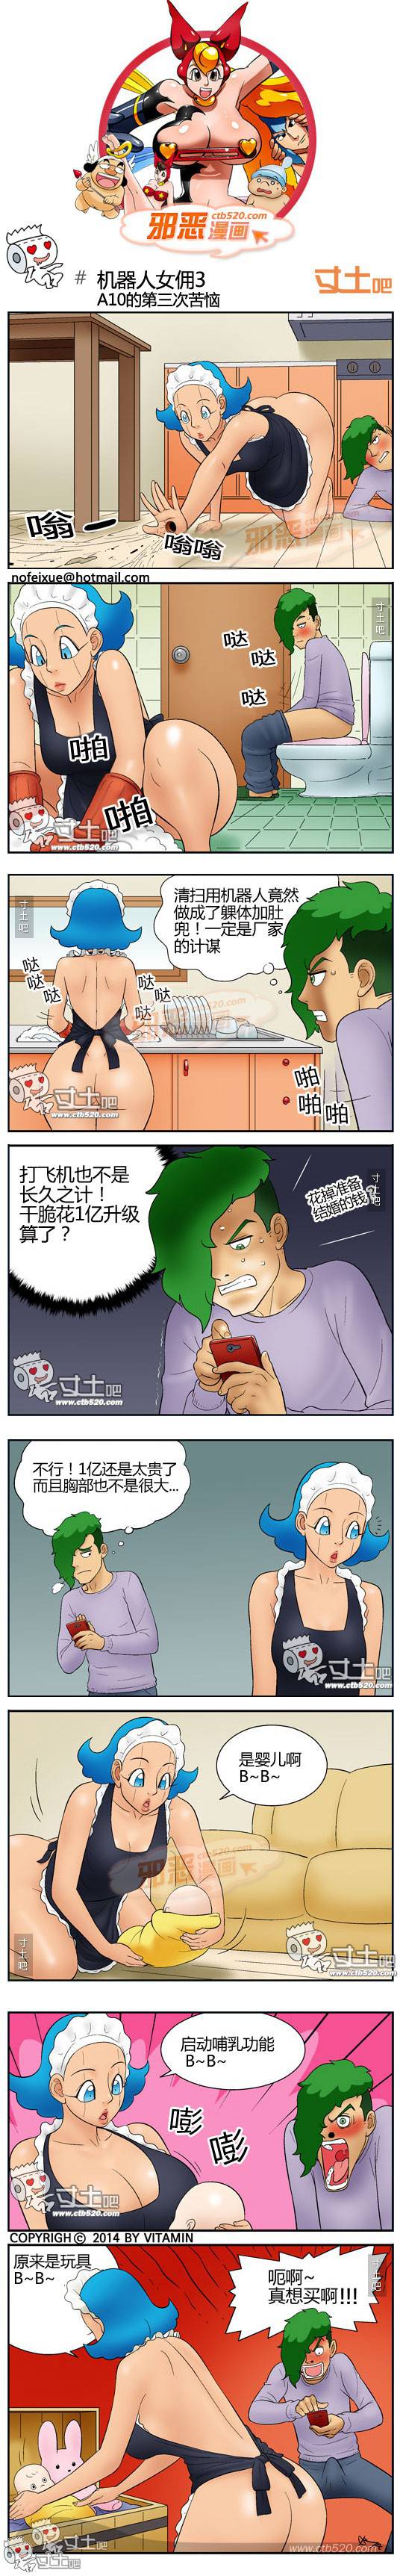 邪恶漫画爆笑囧图第305刊：机器人诺机